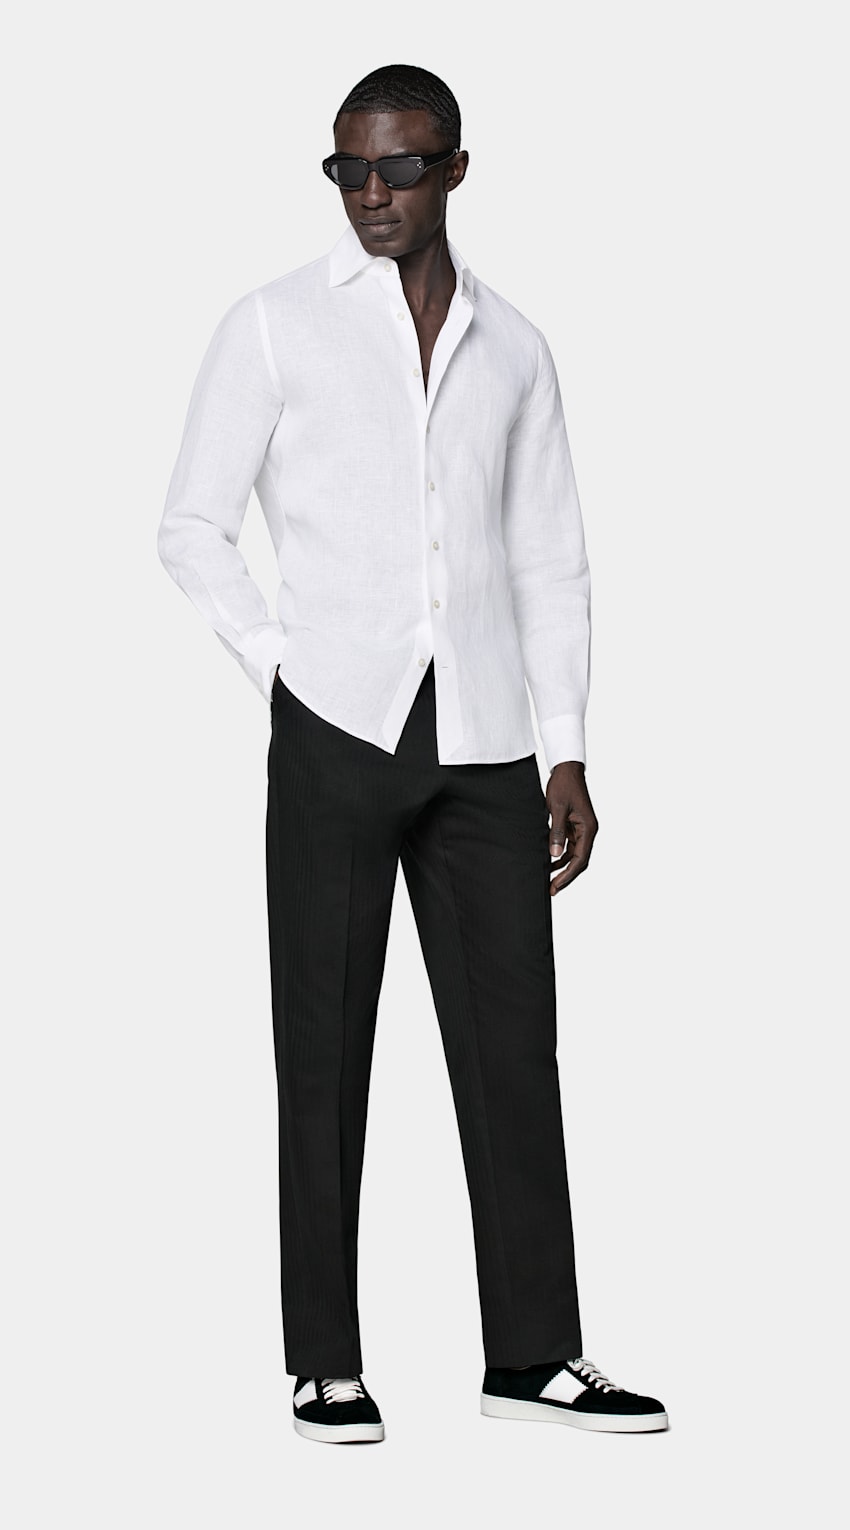 SUITSUPPLY Puro lino - Albini, Italia Camicia bianca tailored fit